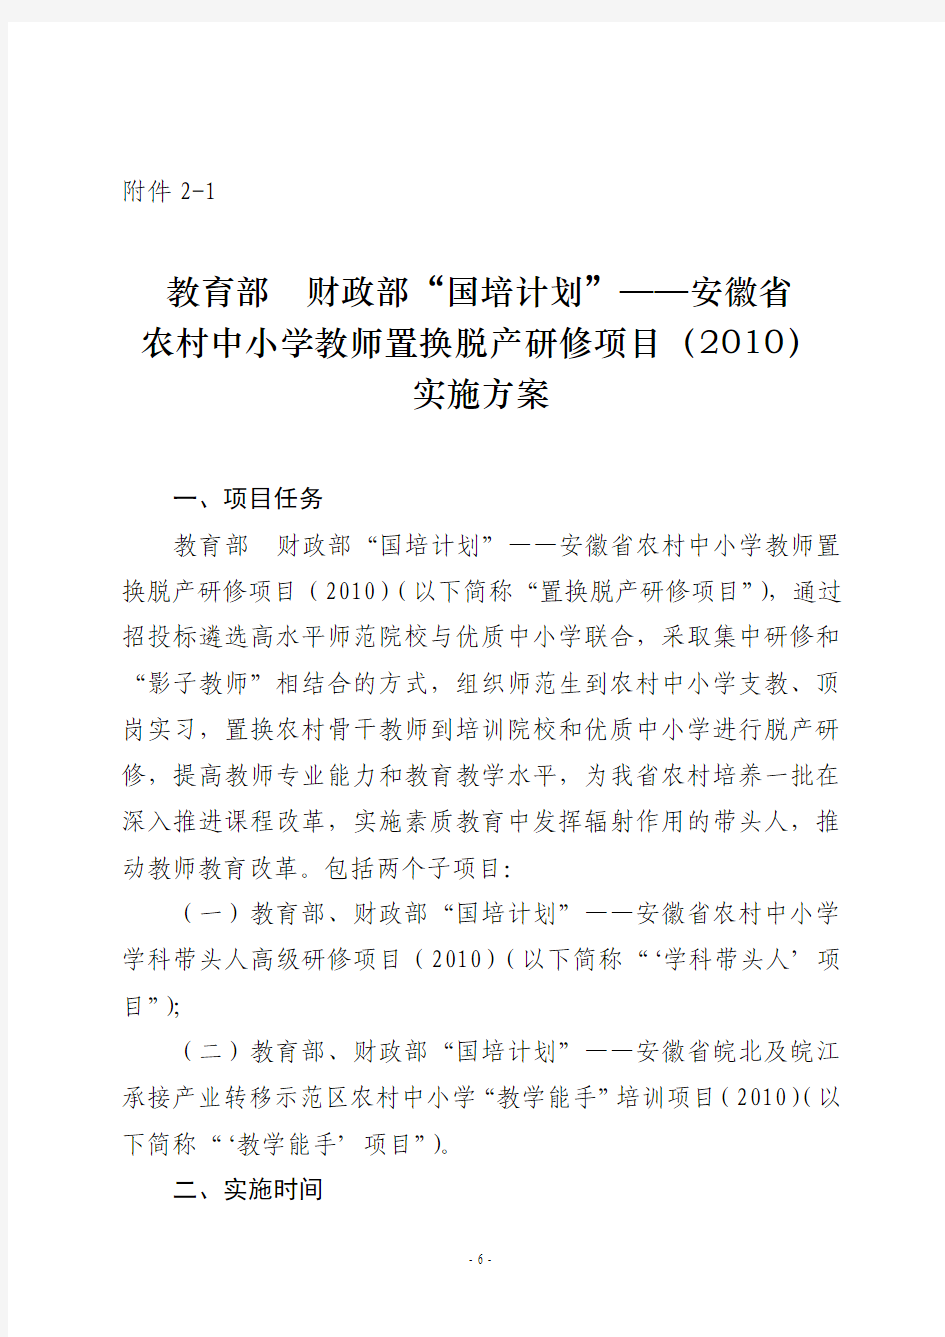 “国培计划”——安徽省农村骨干教师培训项目(2010)实施方案